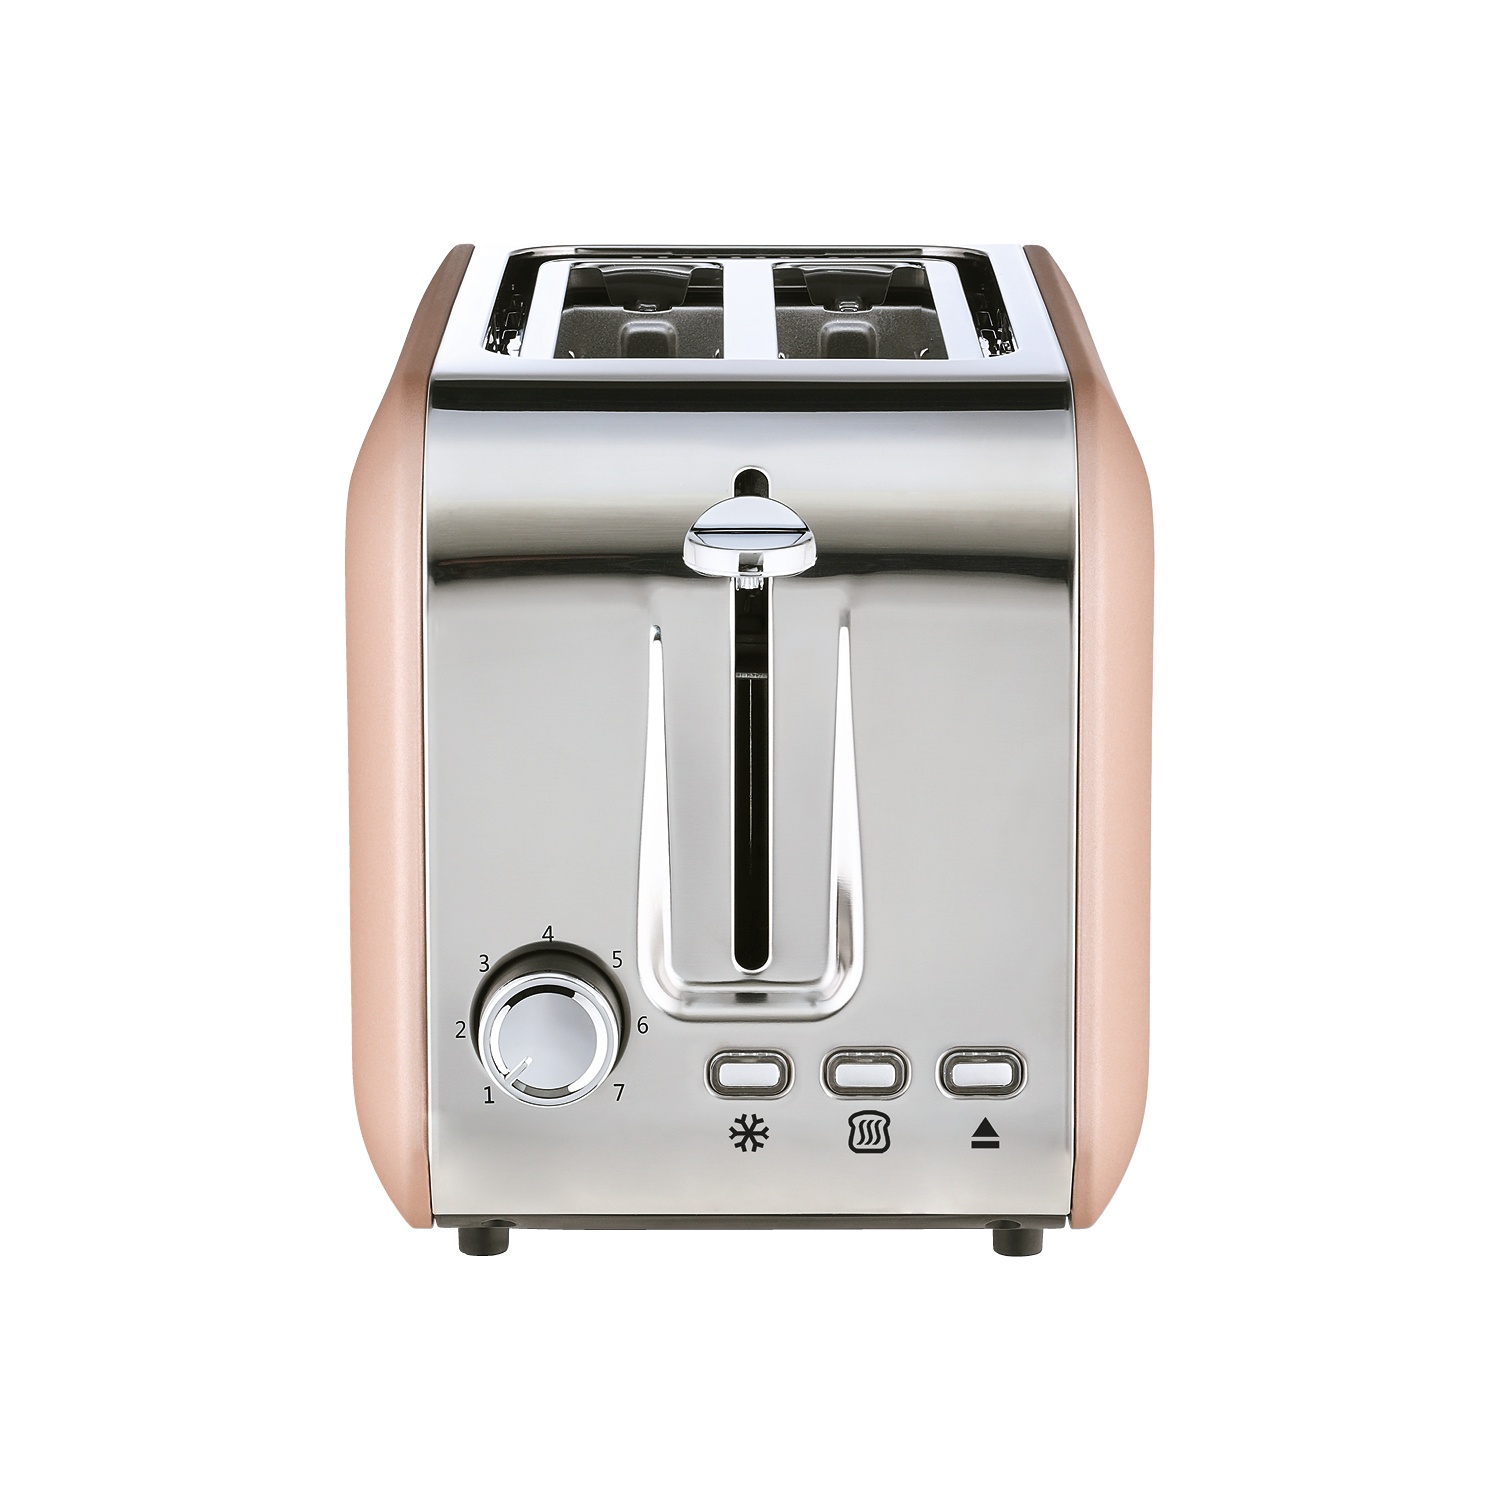 Aldi toaster - Die TOP Auswahl unter allen analysierten Aldi toaster!